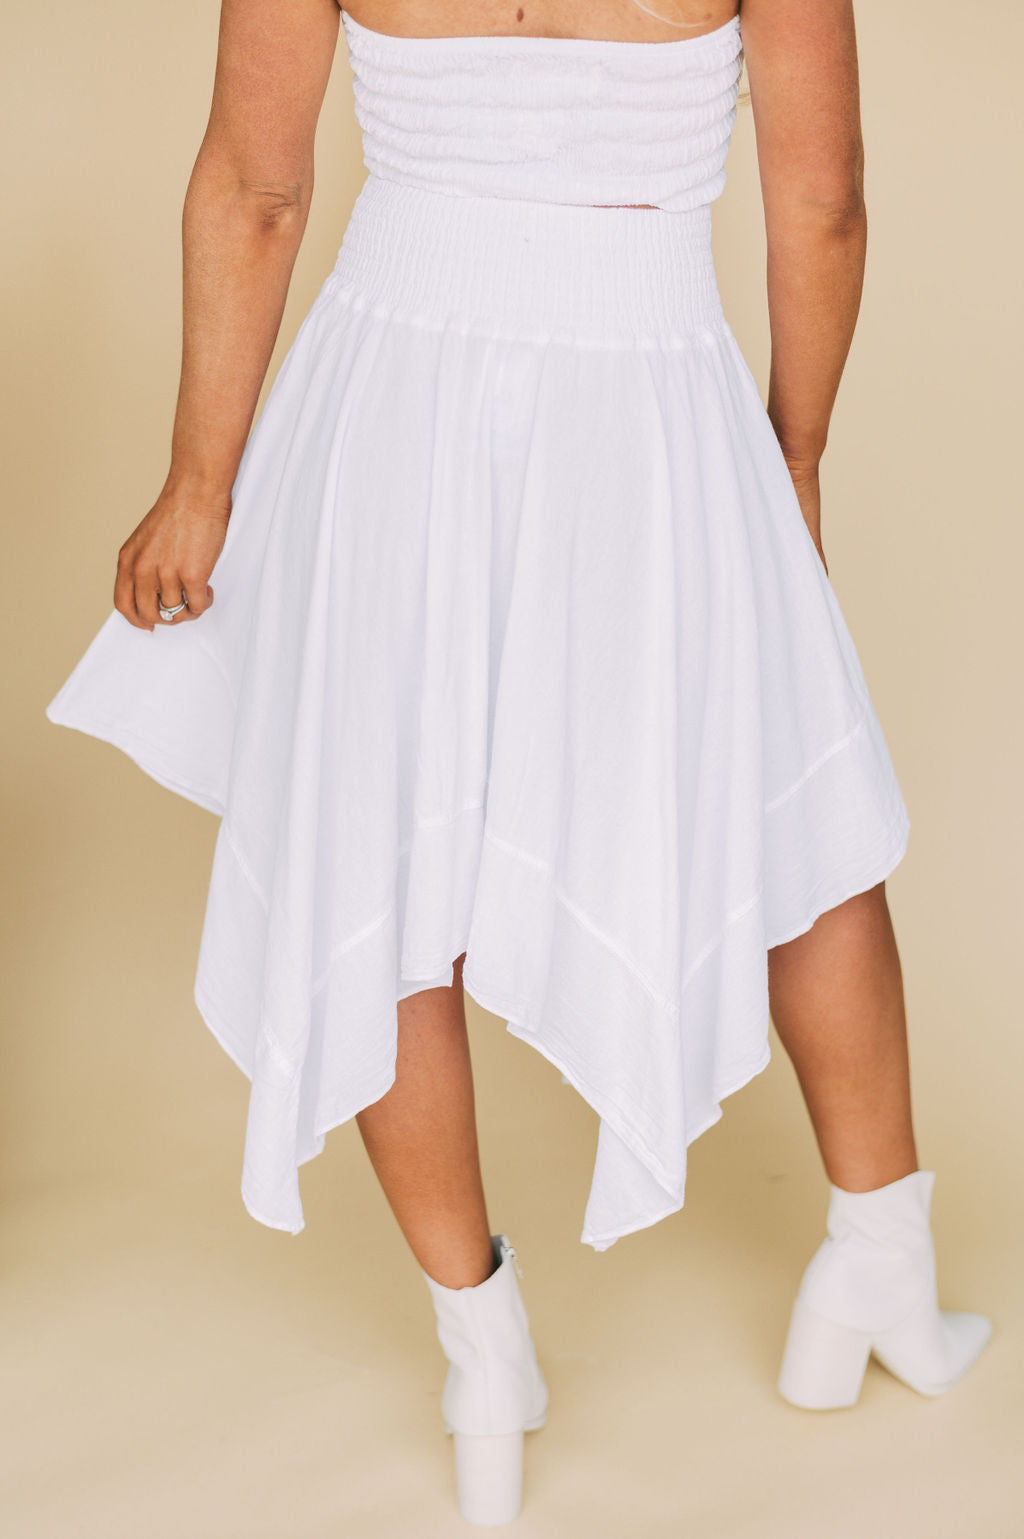 Top more than 269 asymmetrical skirt dress best